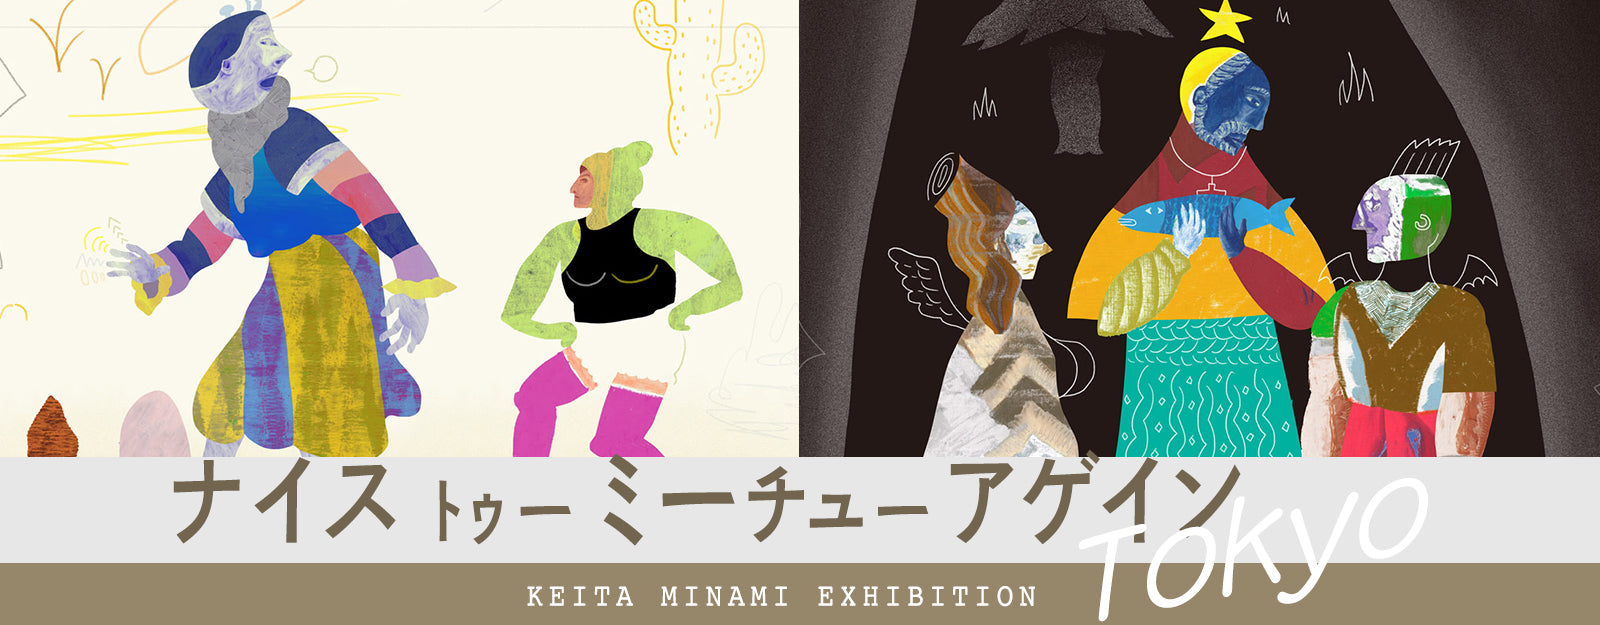 Keita Minami solo exhibition 